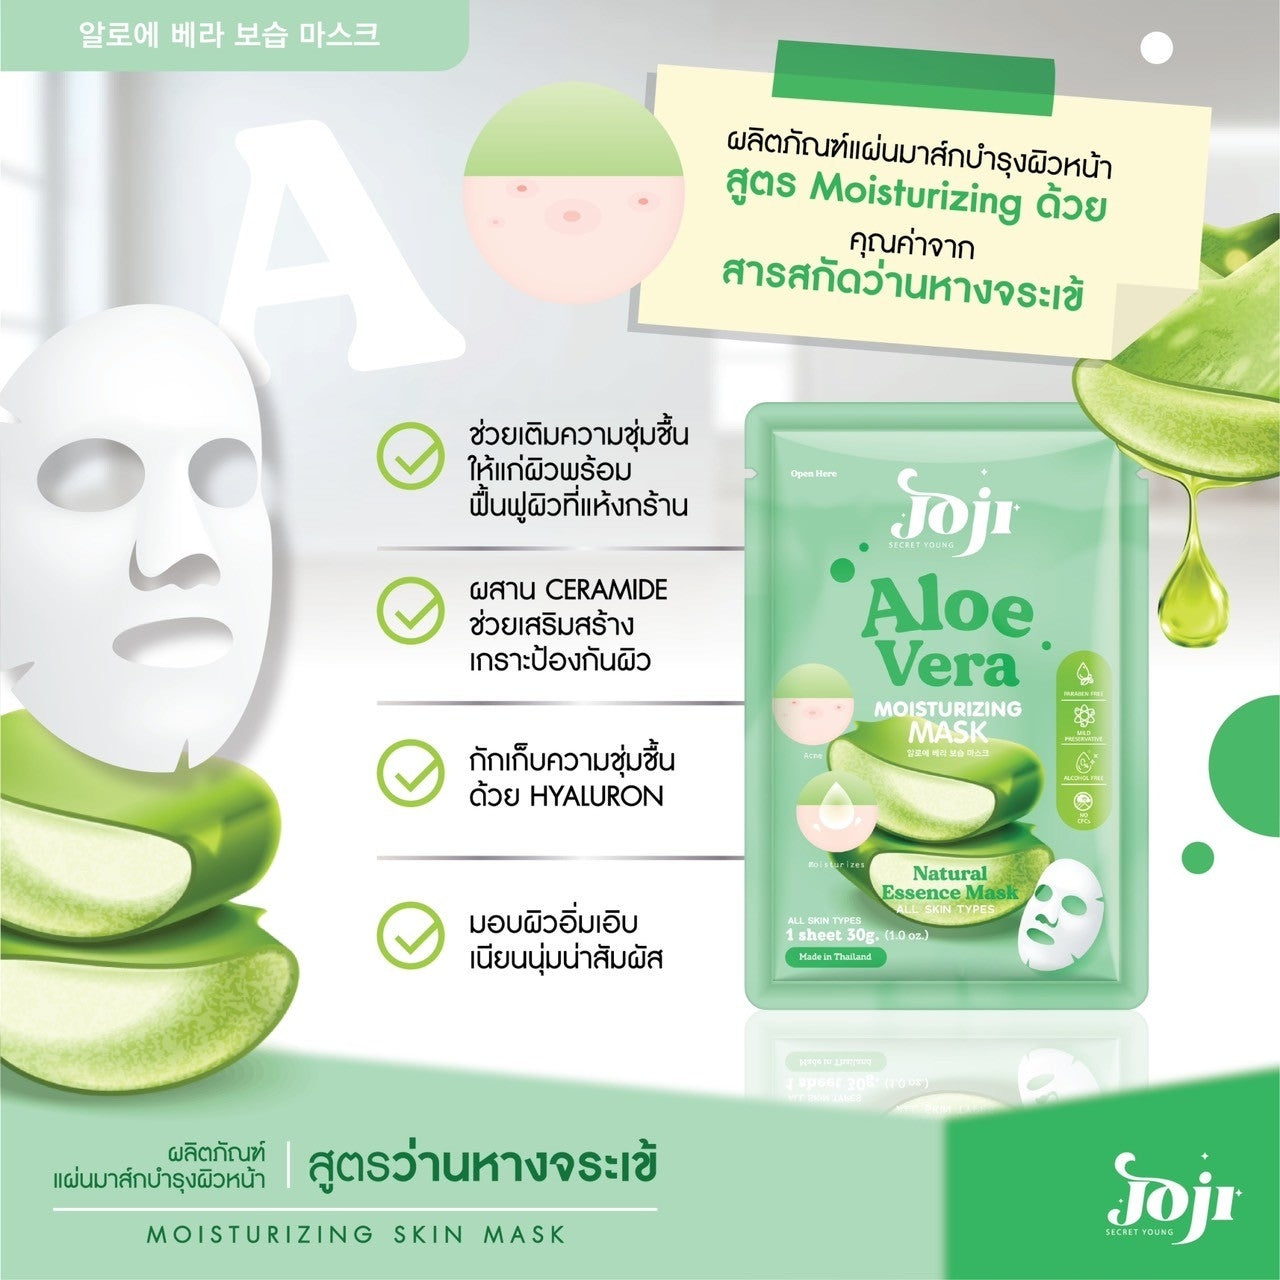 Joji Secret Young 補濕面膜 Moisturizing Mask (蘆薈 Aloe Vera) Buy 4 get 1 FREE! Joji